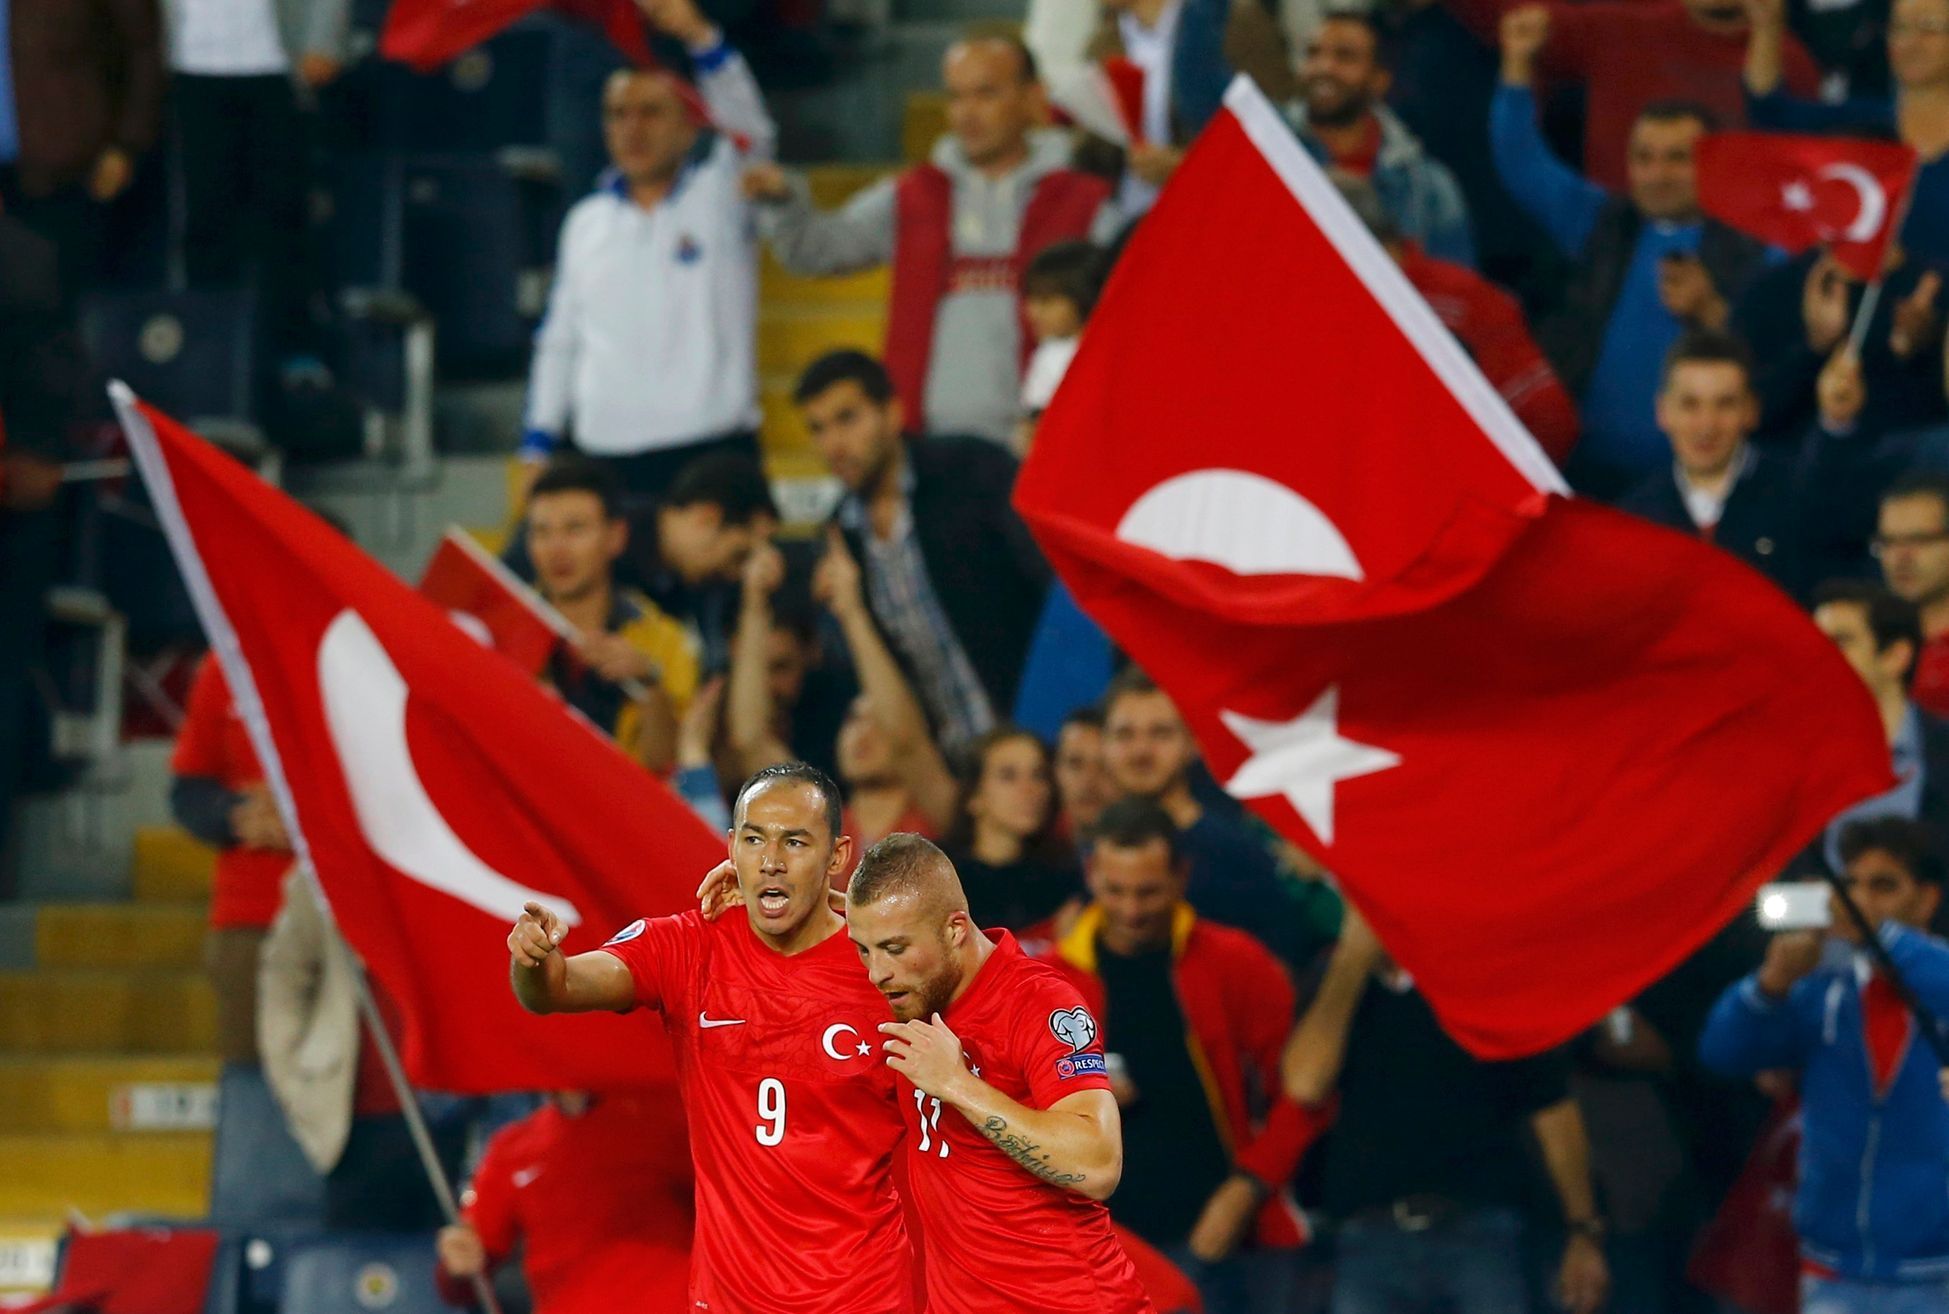 Turecko-Česko: Umut Bulut a Gokhan Tore slaví gól